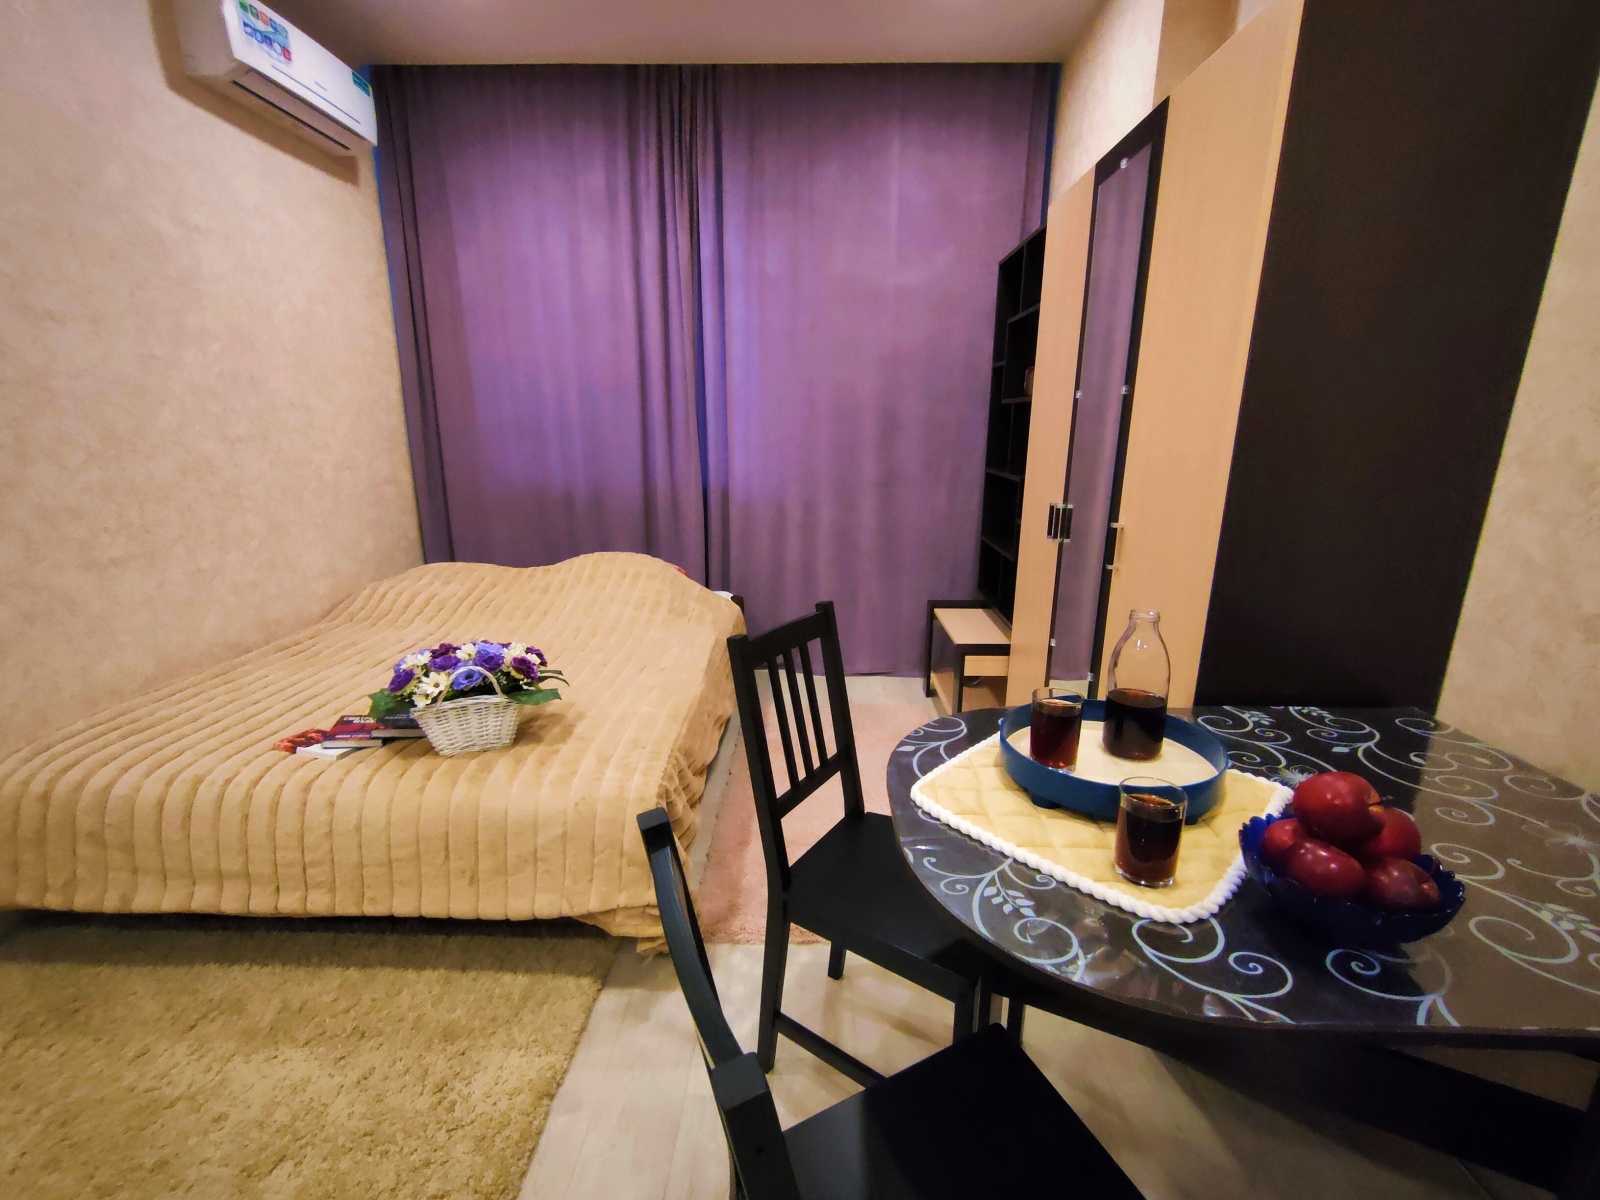 Тёплая уютная квартира бизнес класса со свежим ремонтом расположена в ЖК "Городские истории" 